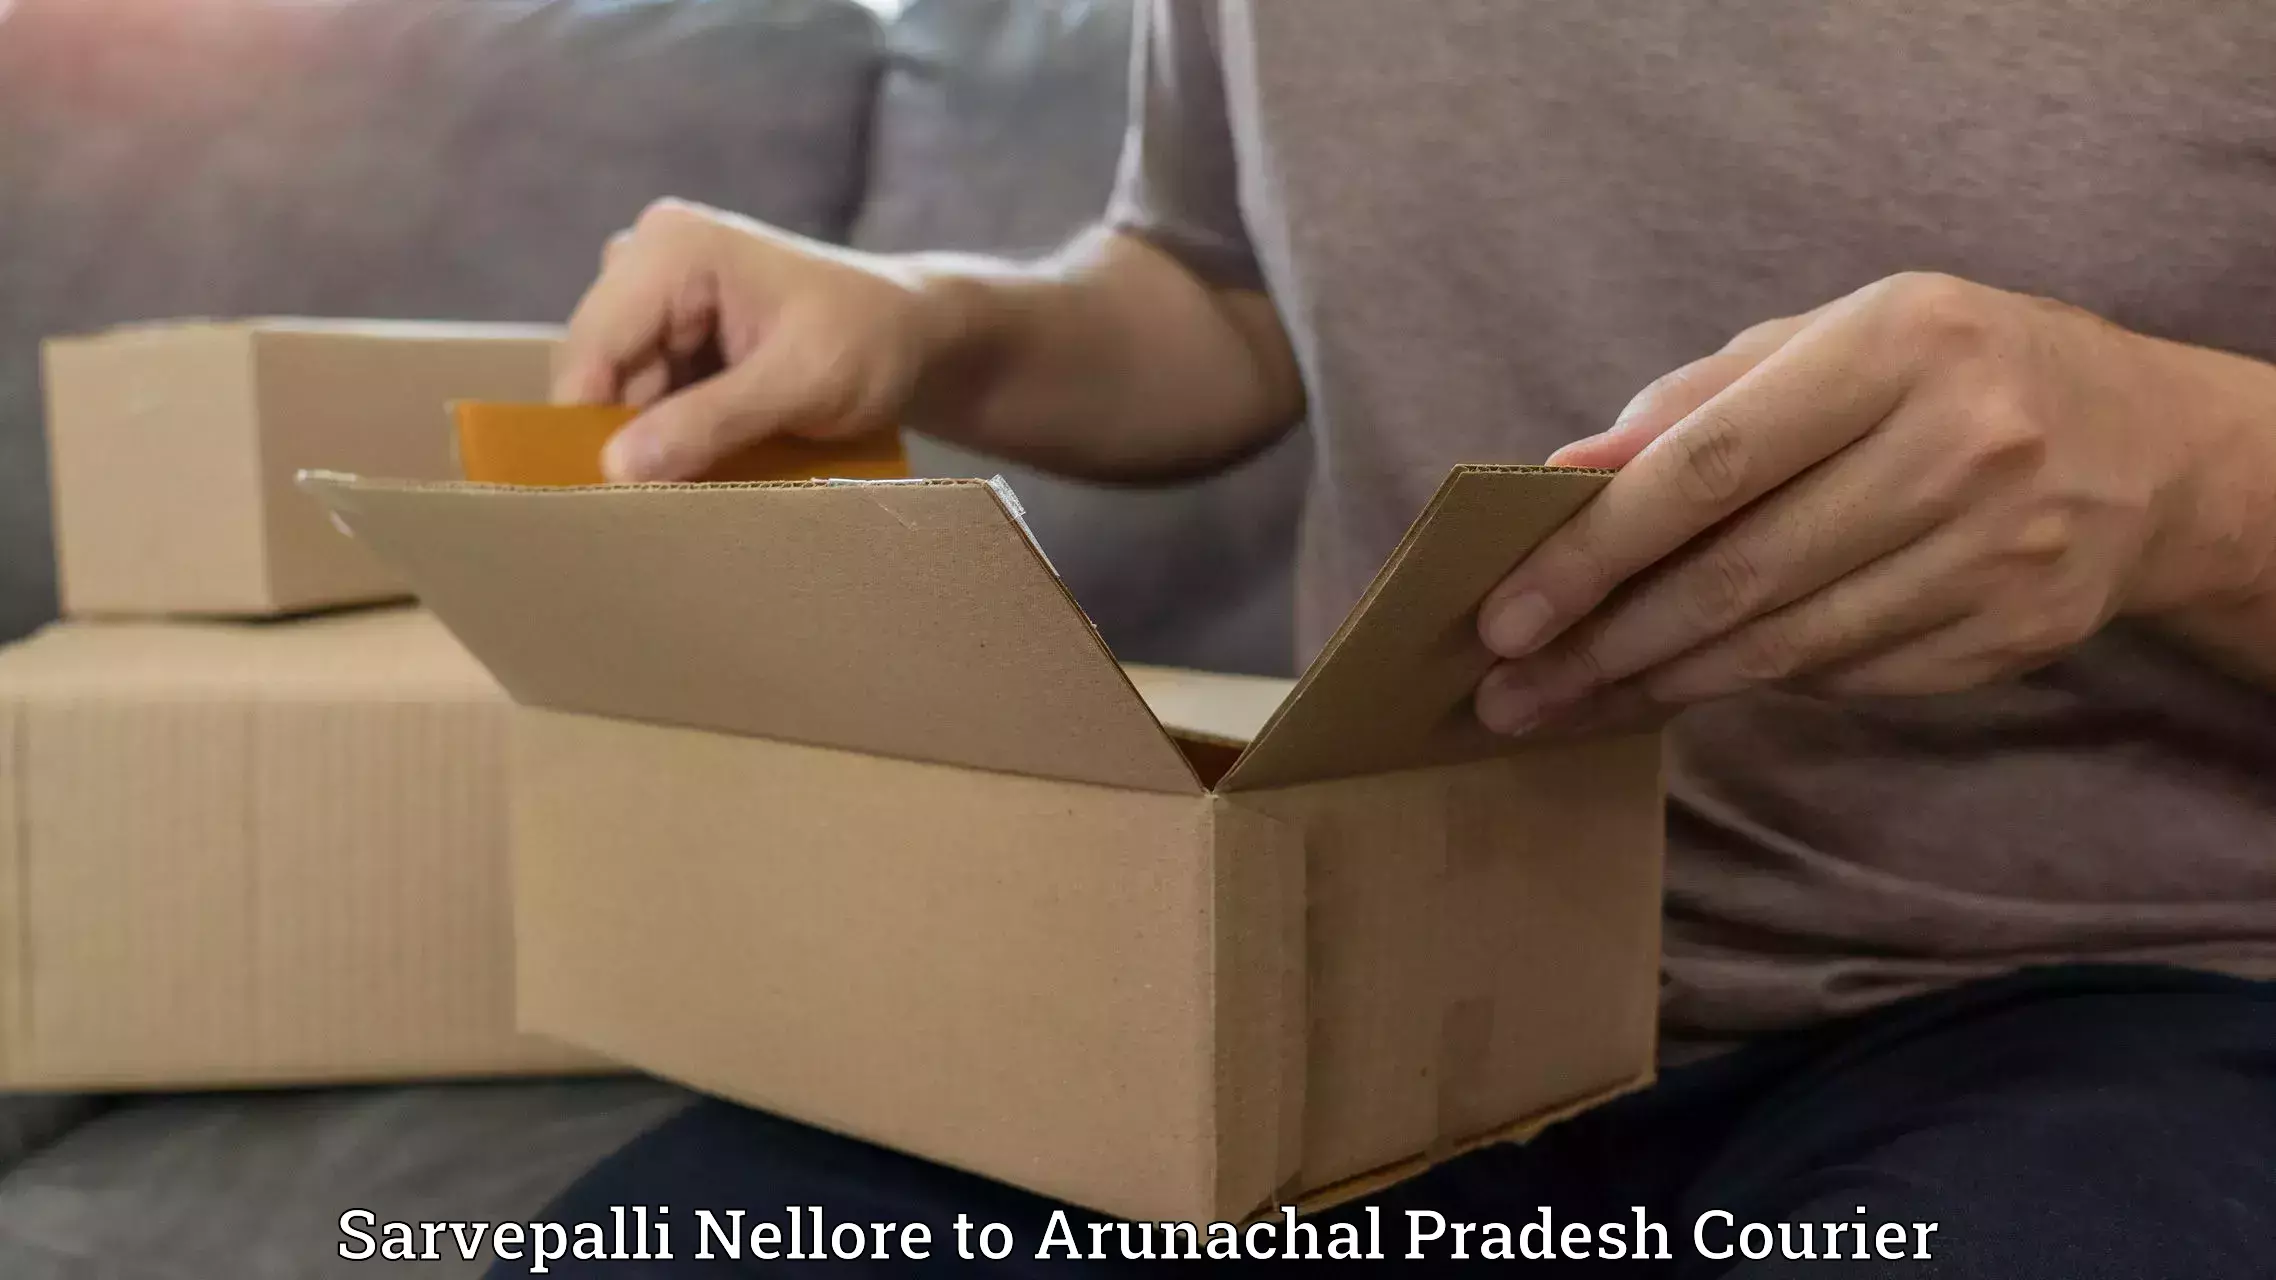 Urgent courier needs Sarvepalli Nellore to Arunachal Pradesh